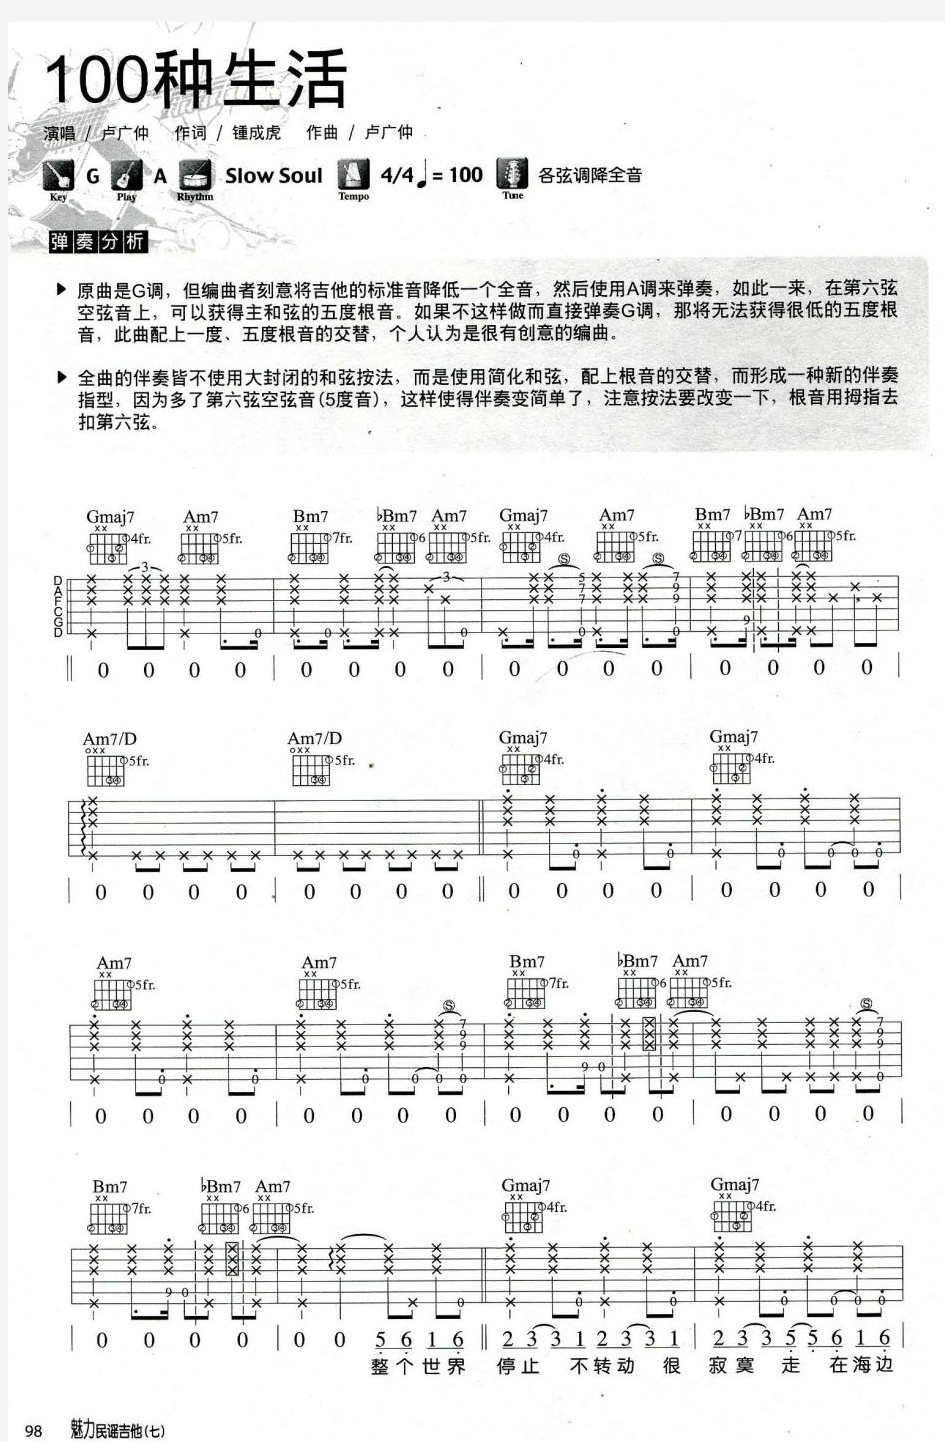 卢广仲《100种生活》吉他弹唱谱